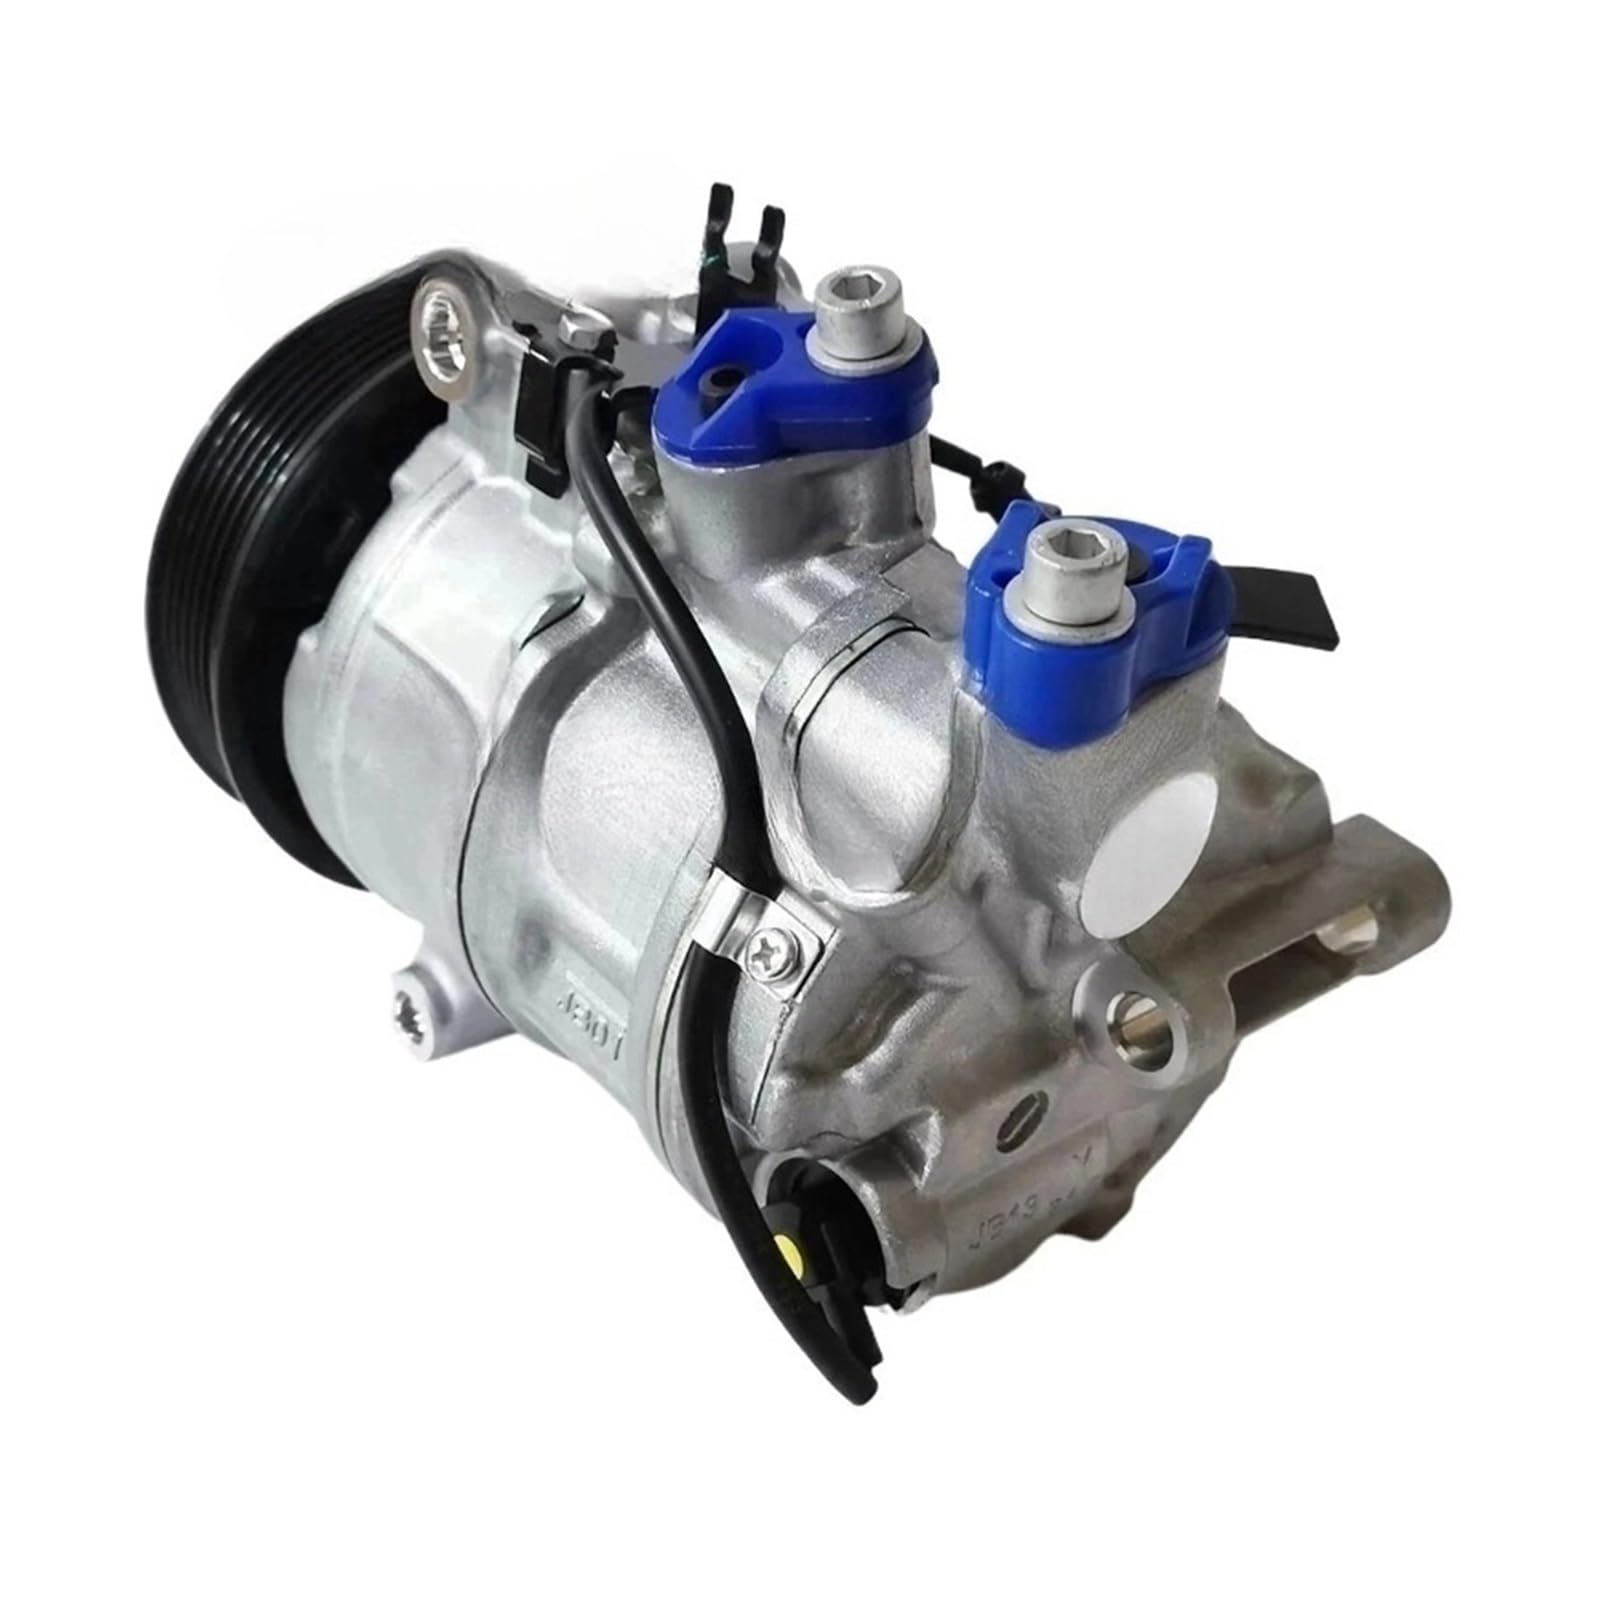 A/C AC Klimaanlage Kompressor Kühlung Pumpe Kompatibel for Porsche -Macan 95B V6 TURBO GTS 3,6 L 3,0 L 2015 2016 2017 95B260805B von OWYTNRCJ